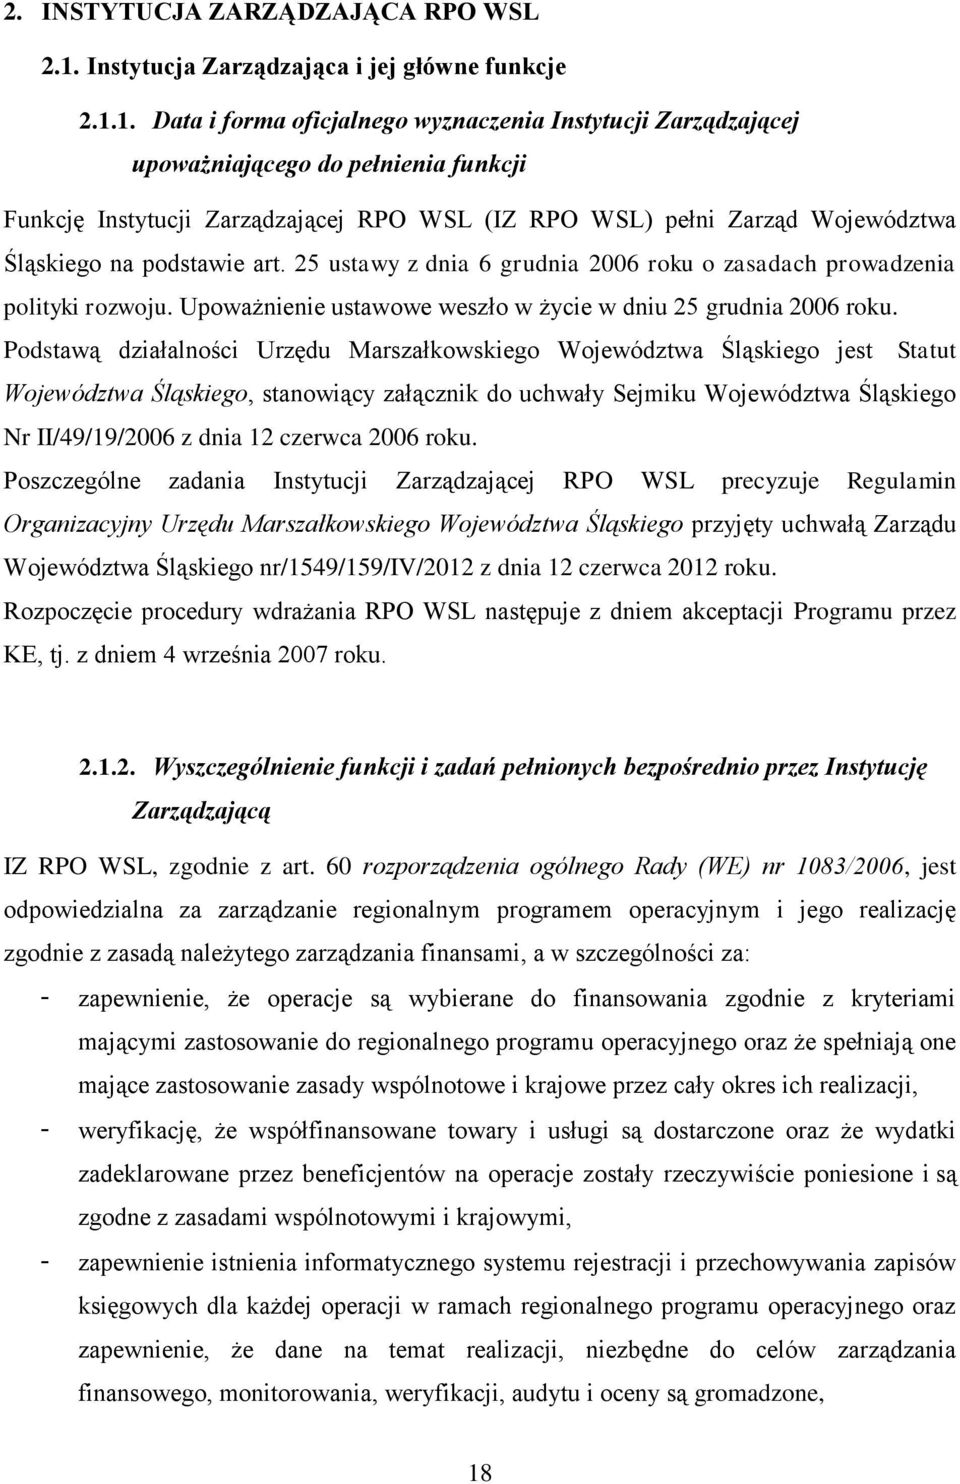 1. Data i forma oficjalnego wyznaczenia Instytucji Zarządzającej upoważniającego do pełnienia funkcji Funkcję Instytucji Zarządzającej RPO WSL (IZ RPO WSL) pełni Zarząd Województwa Śląskiego na